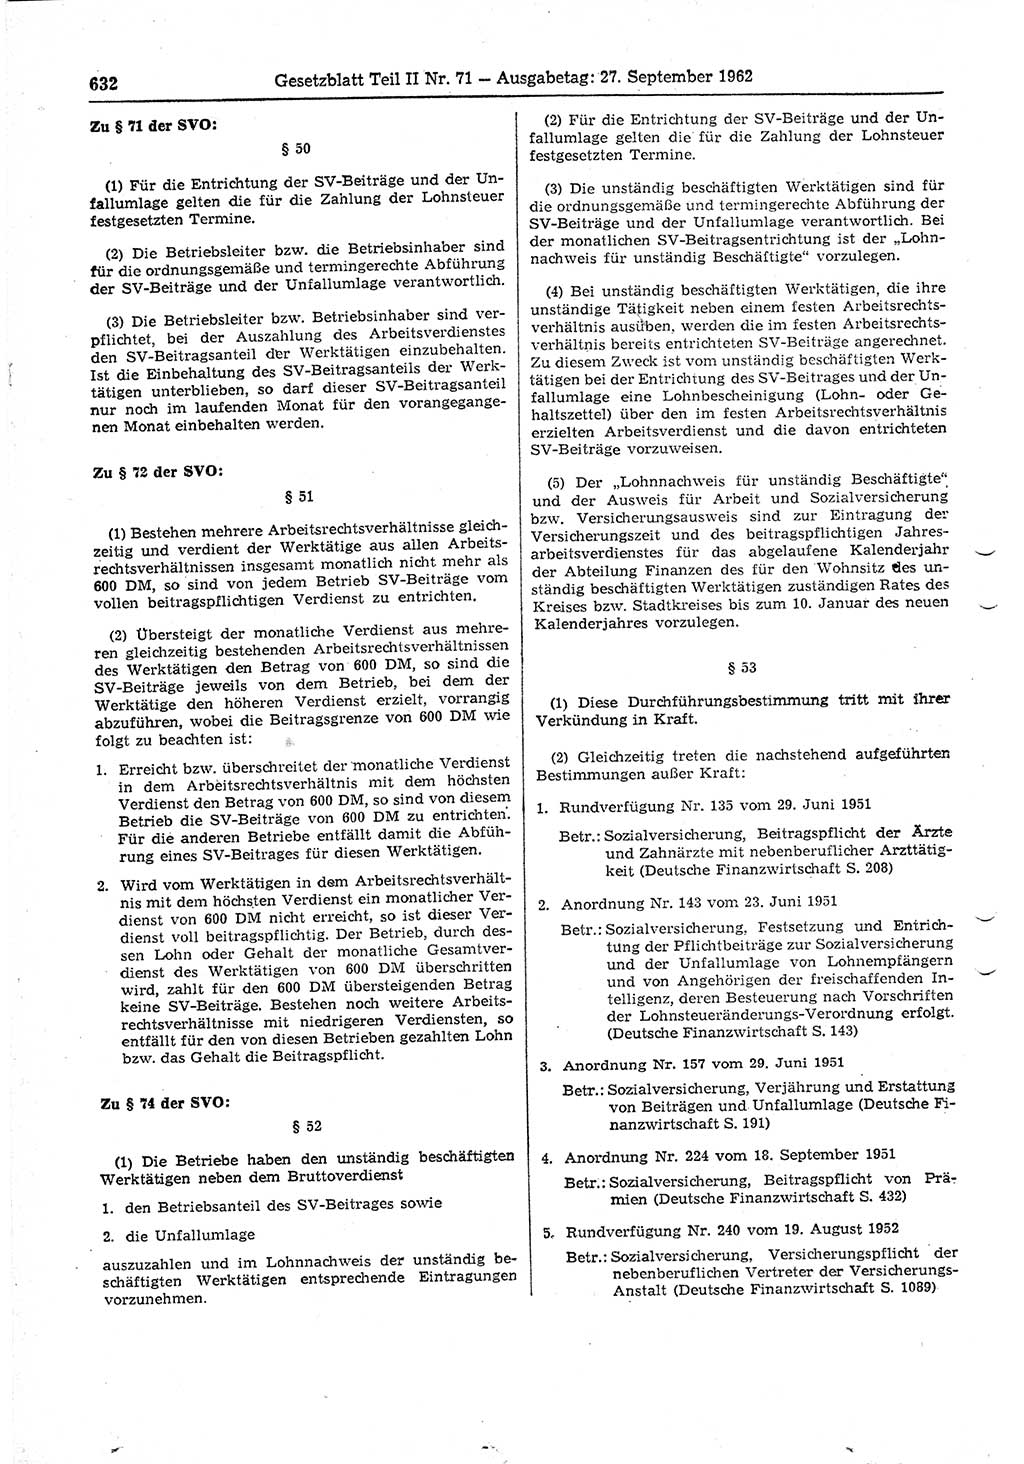 Gesetzblatt (GBl.) der Deutschen Demokratischen Republik (DDR) Teil ⅠⅠ 1962, Seite 632 (GBl. DDR ⅠⅠ 1962, S. 632)